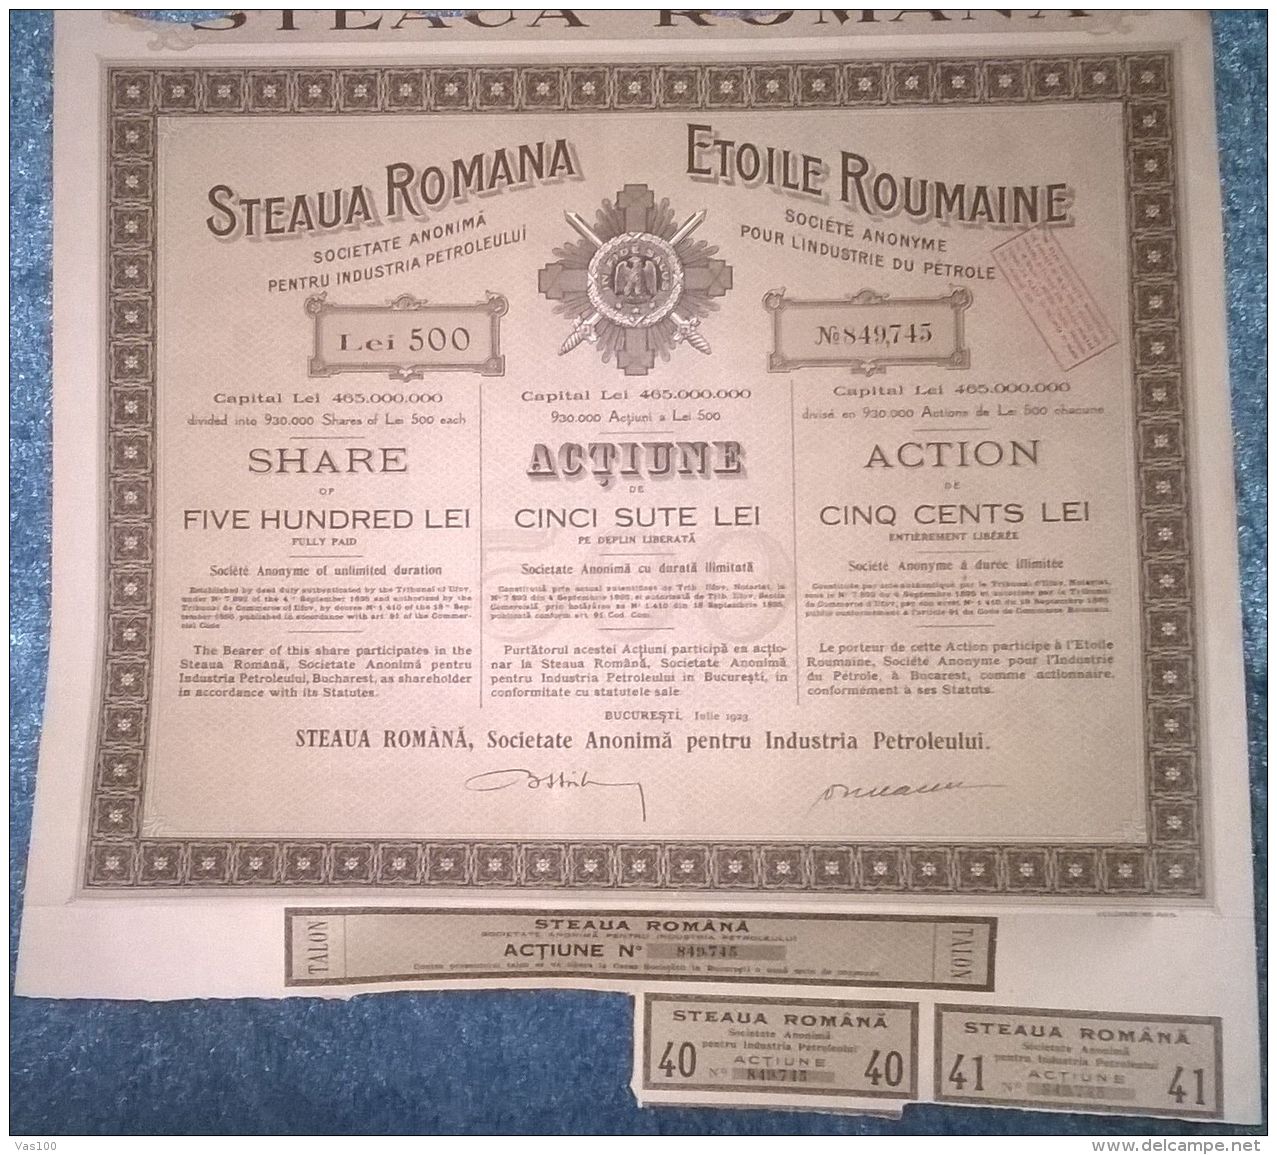 STEAUA ROMANA OIL COMPANY, SHARES, STOCK, REVENUE COUPONS, 1923, ROMANIA - Petrolio